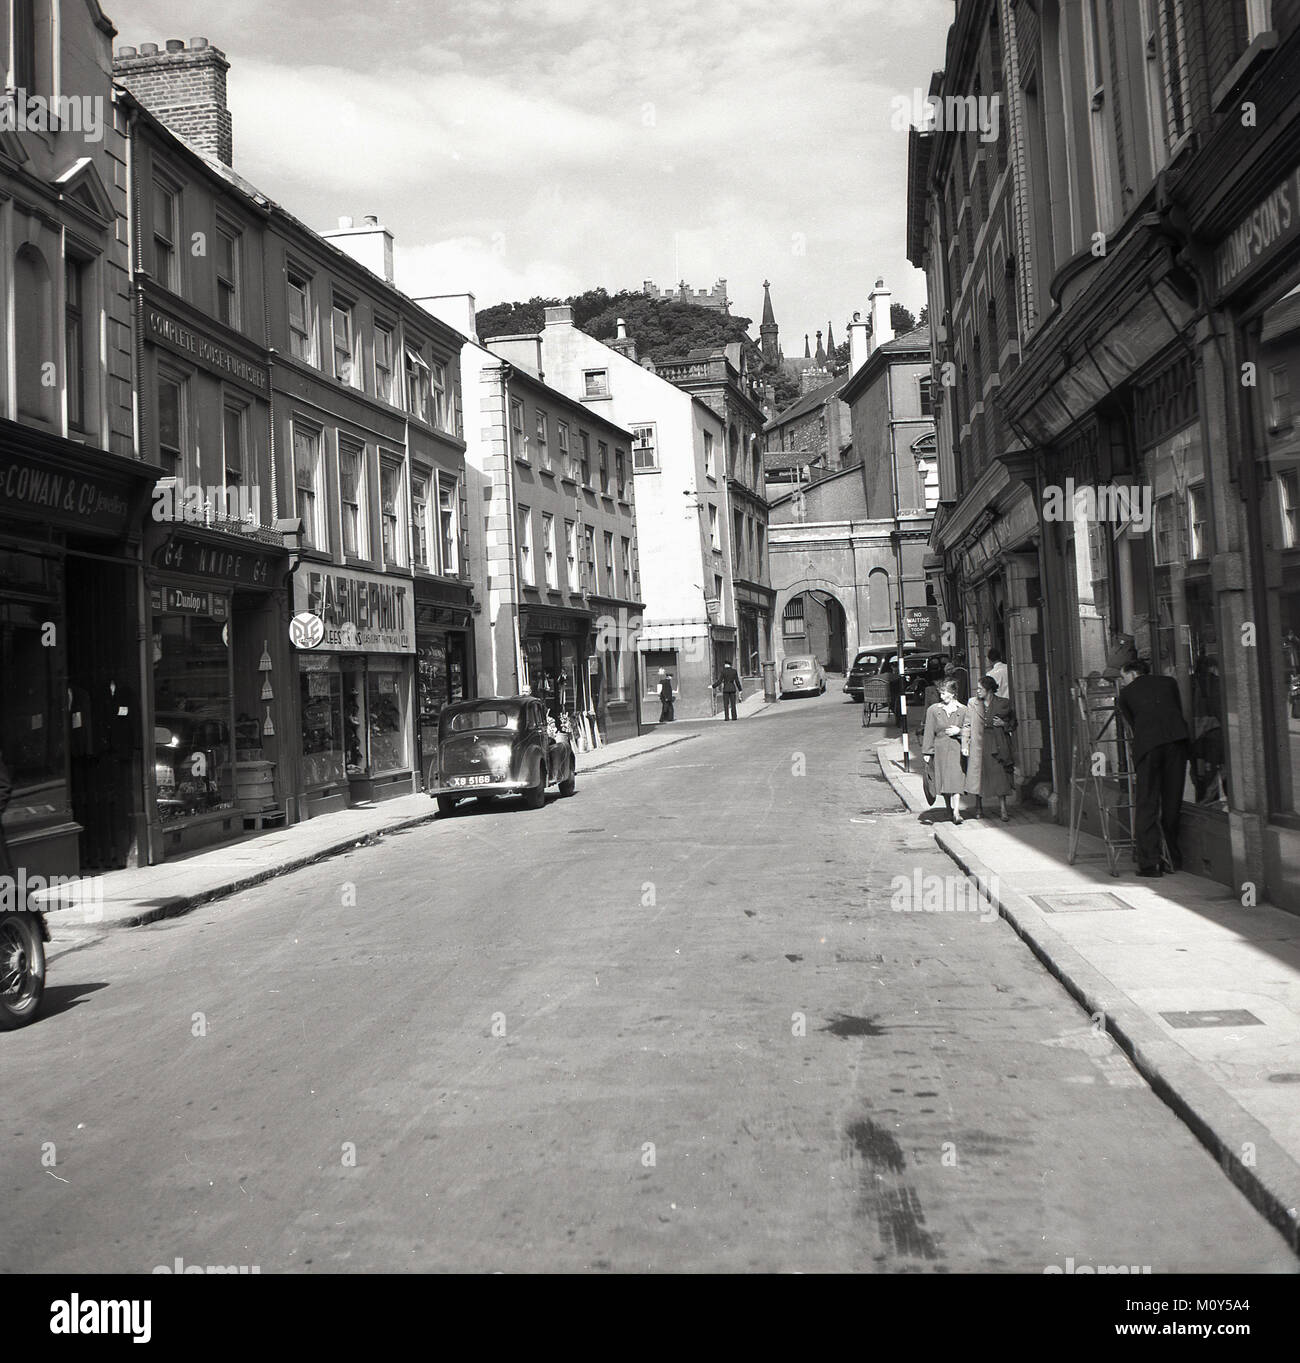 Années 1950, photo historique montrant une vue de la rue Scotch, Armagh, en Irlande du Nord. Cathédrale St Patricks est juste vu dans la distance au-dessus des arbres. Banque D'Images